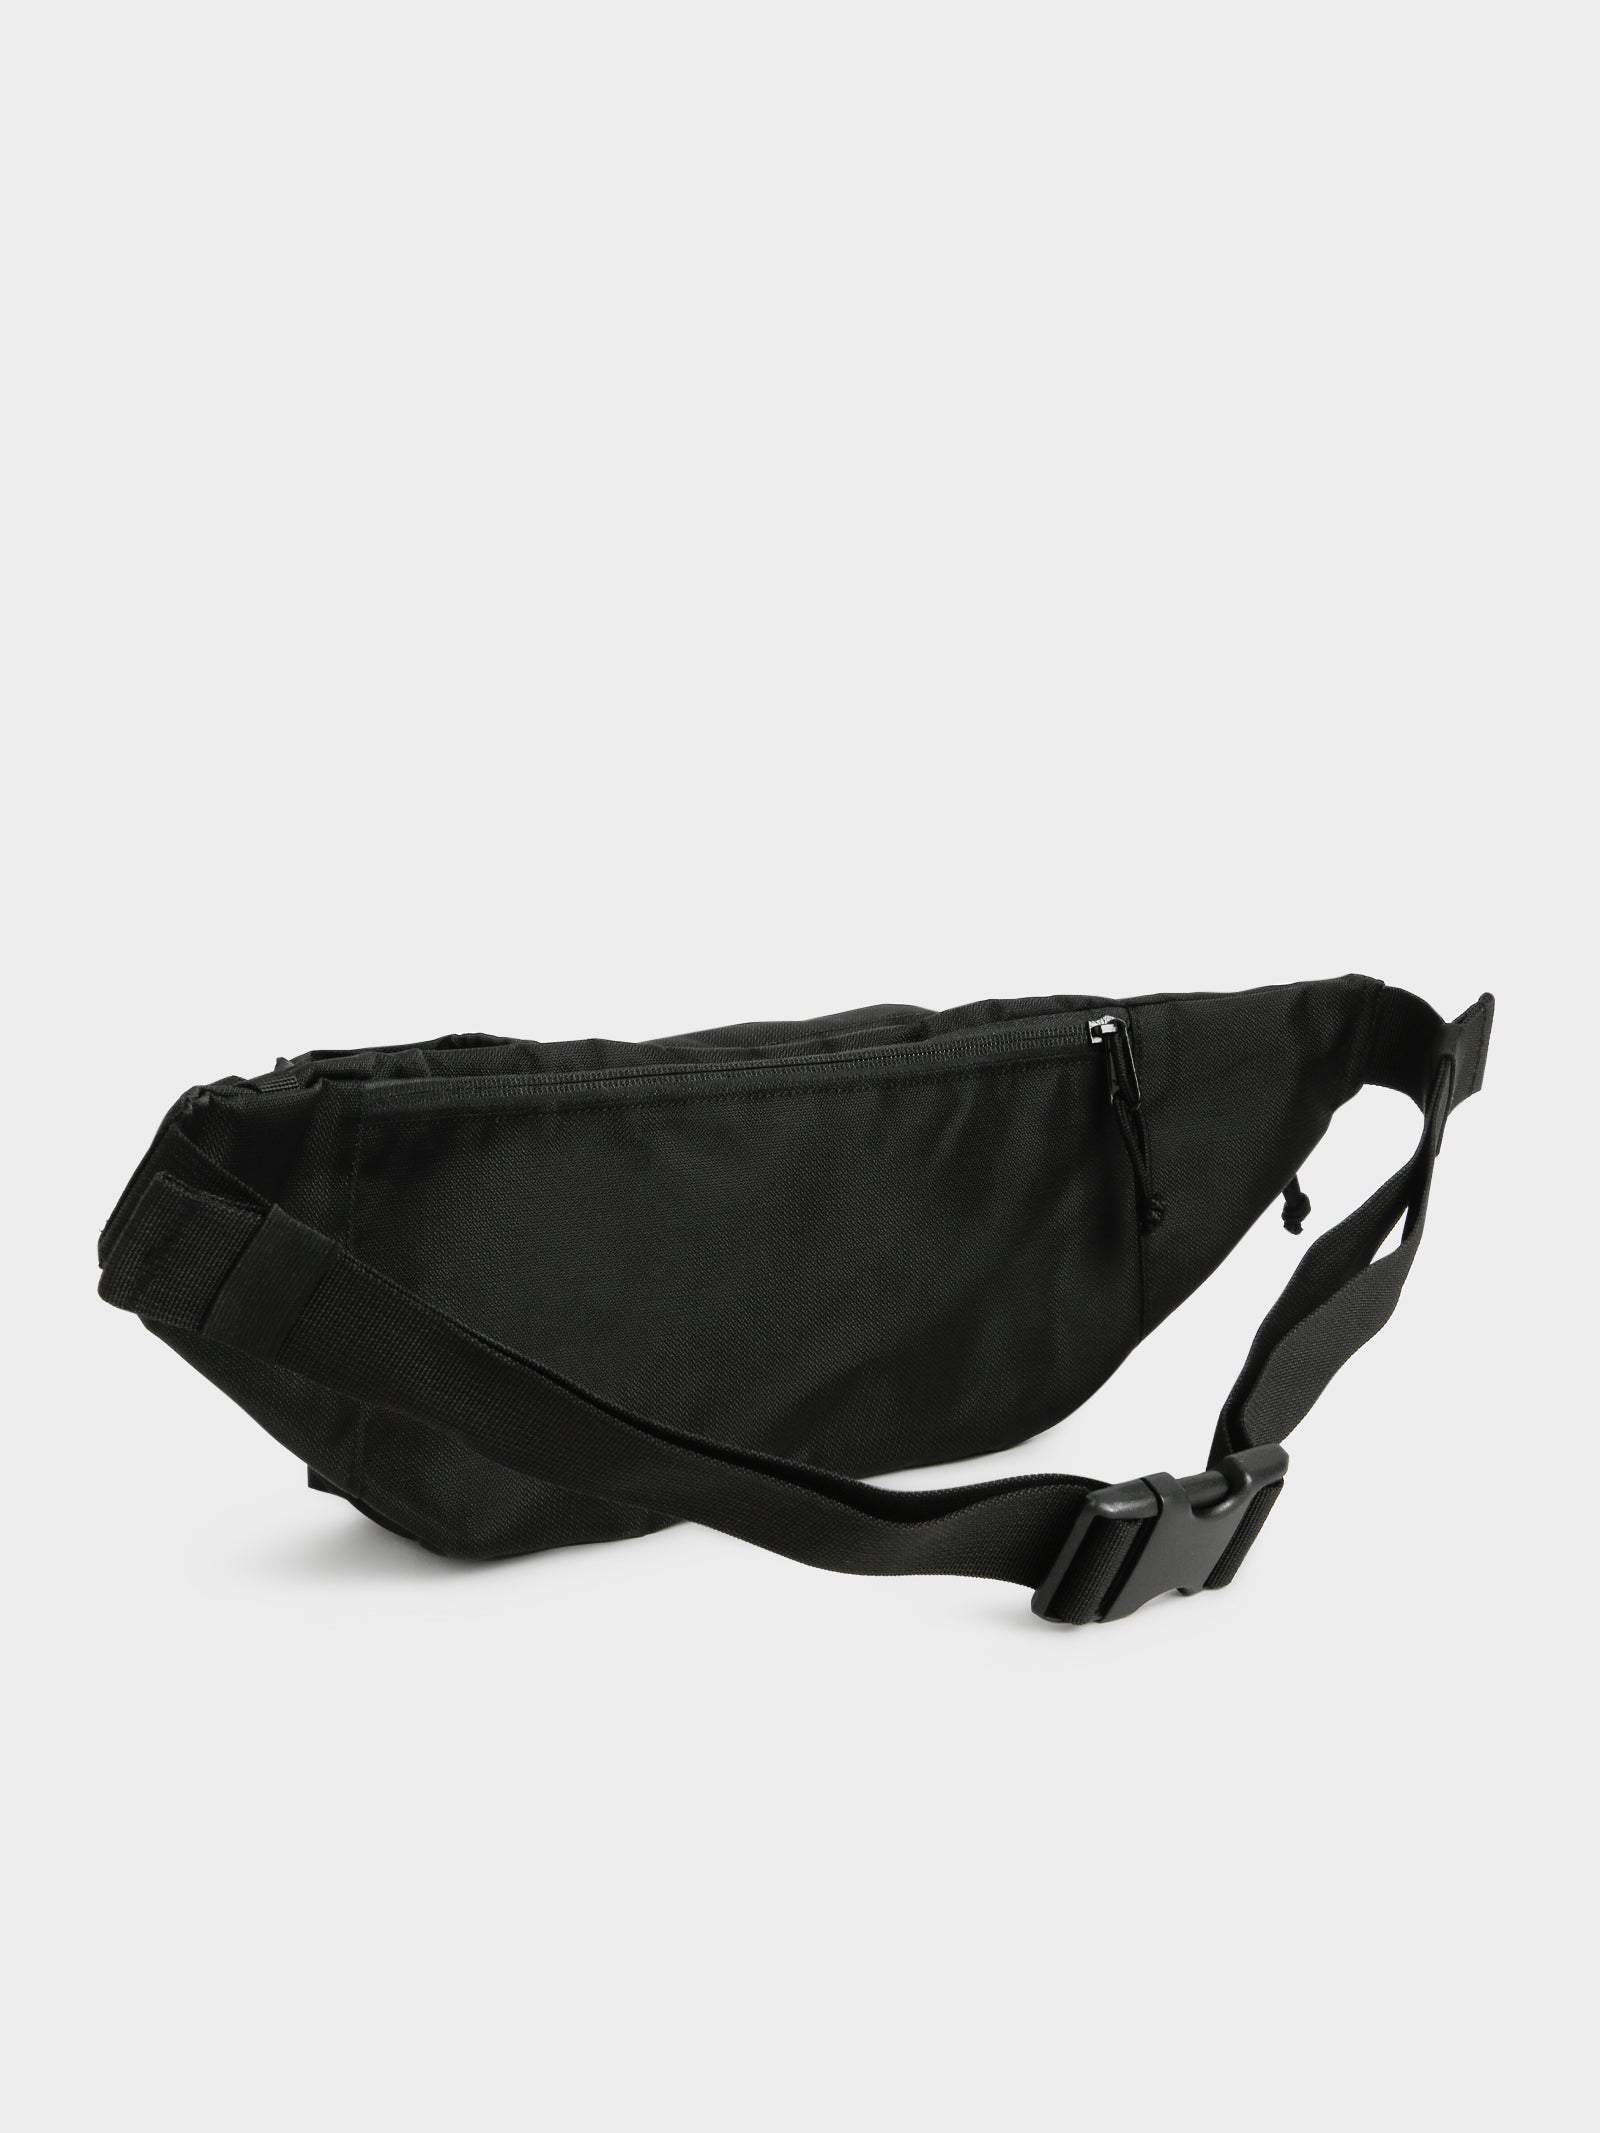 CARHARTT WIP DELTA HIP BAG shoulder bag body bag hip back BLACK I0281528900  